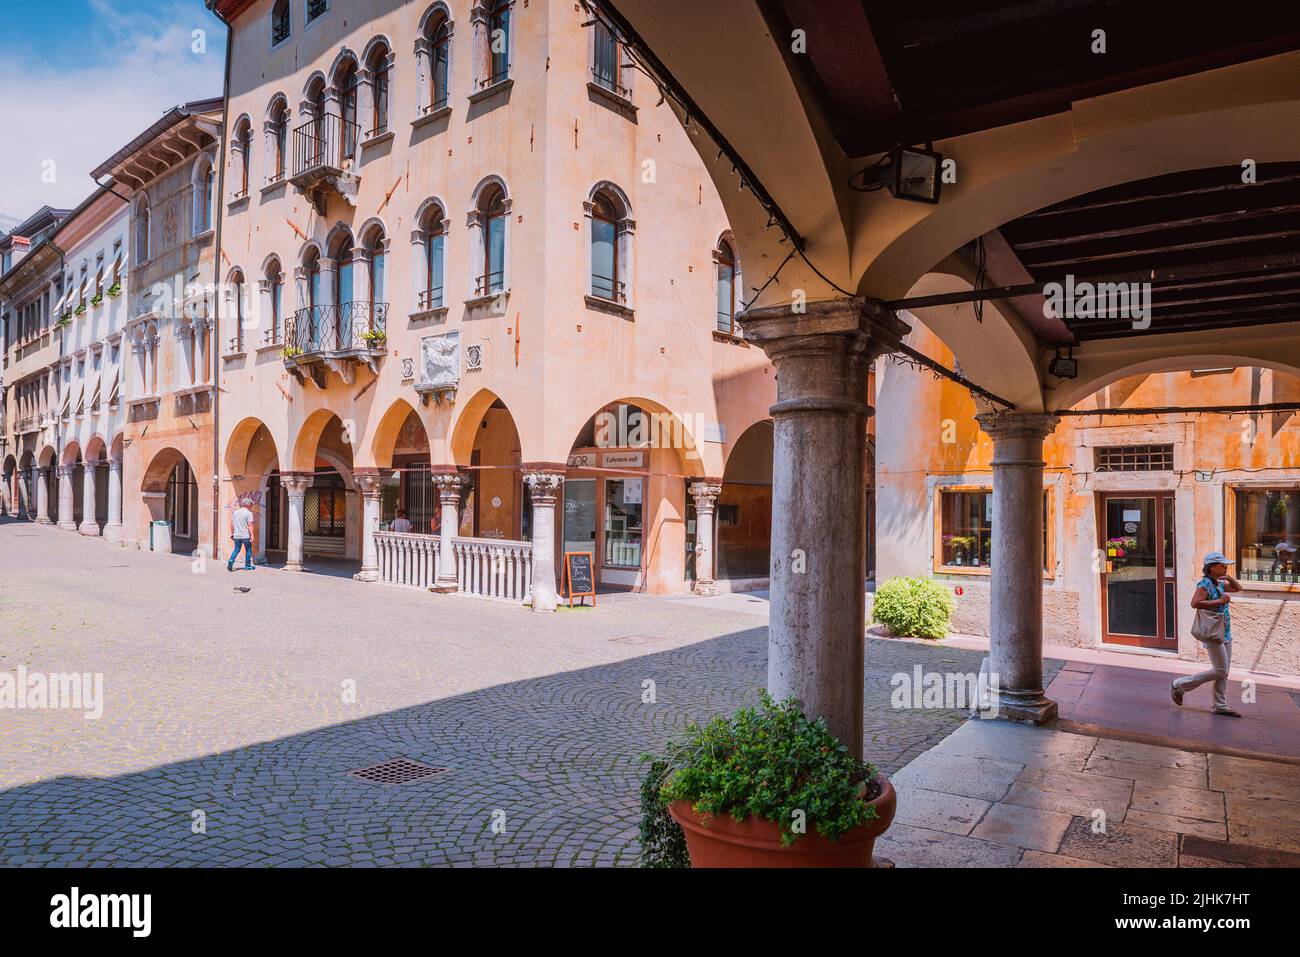 Arcades in the Market square - Piazza Mercato. Belluno, Veneto, Italy, Europe. Stock Photo